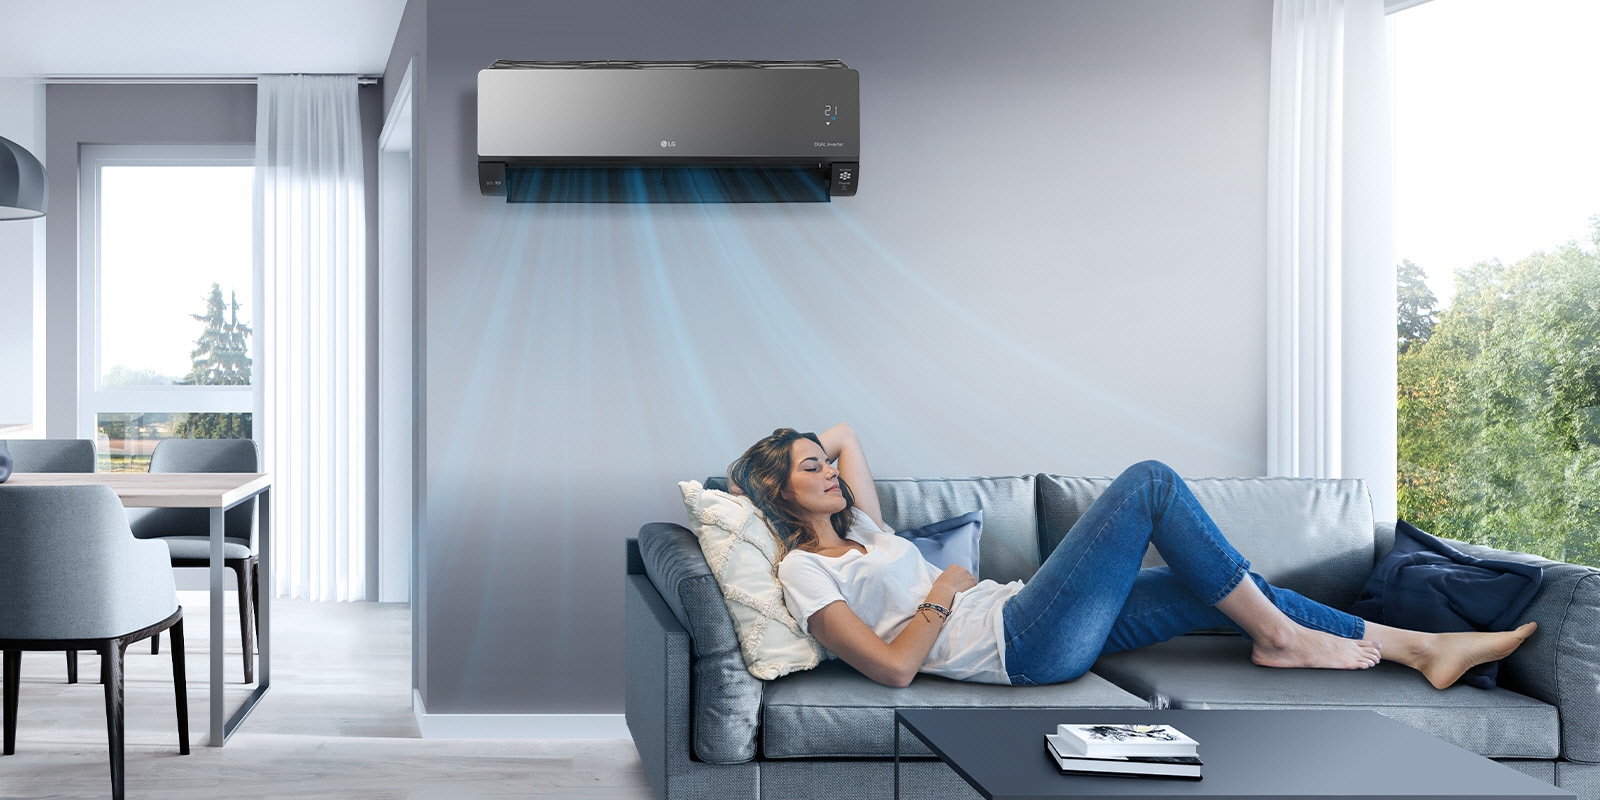 Egy nő egy nappaliban egy ágyon pihen, fölötte egy LG légkondicionáló van felszerelve a falra. A képen kék színnel jelzett levegőáram látható, amely a berendezés bekapcsolt állapotát és a szoba hűtését jelzi.